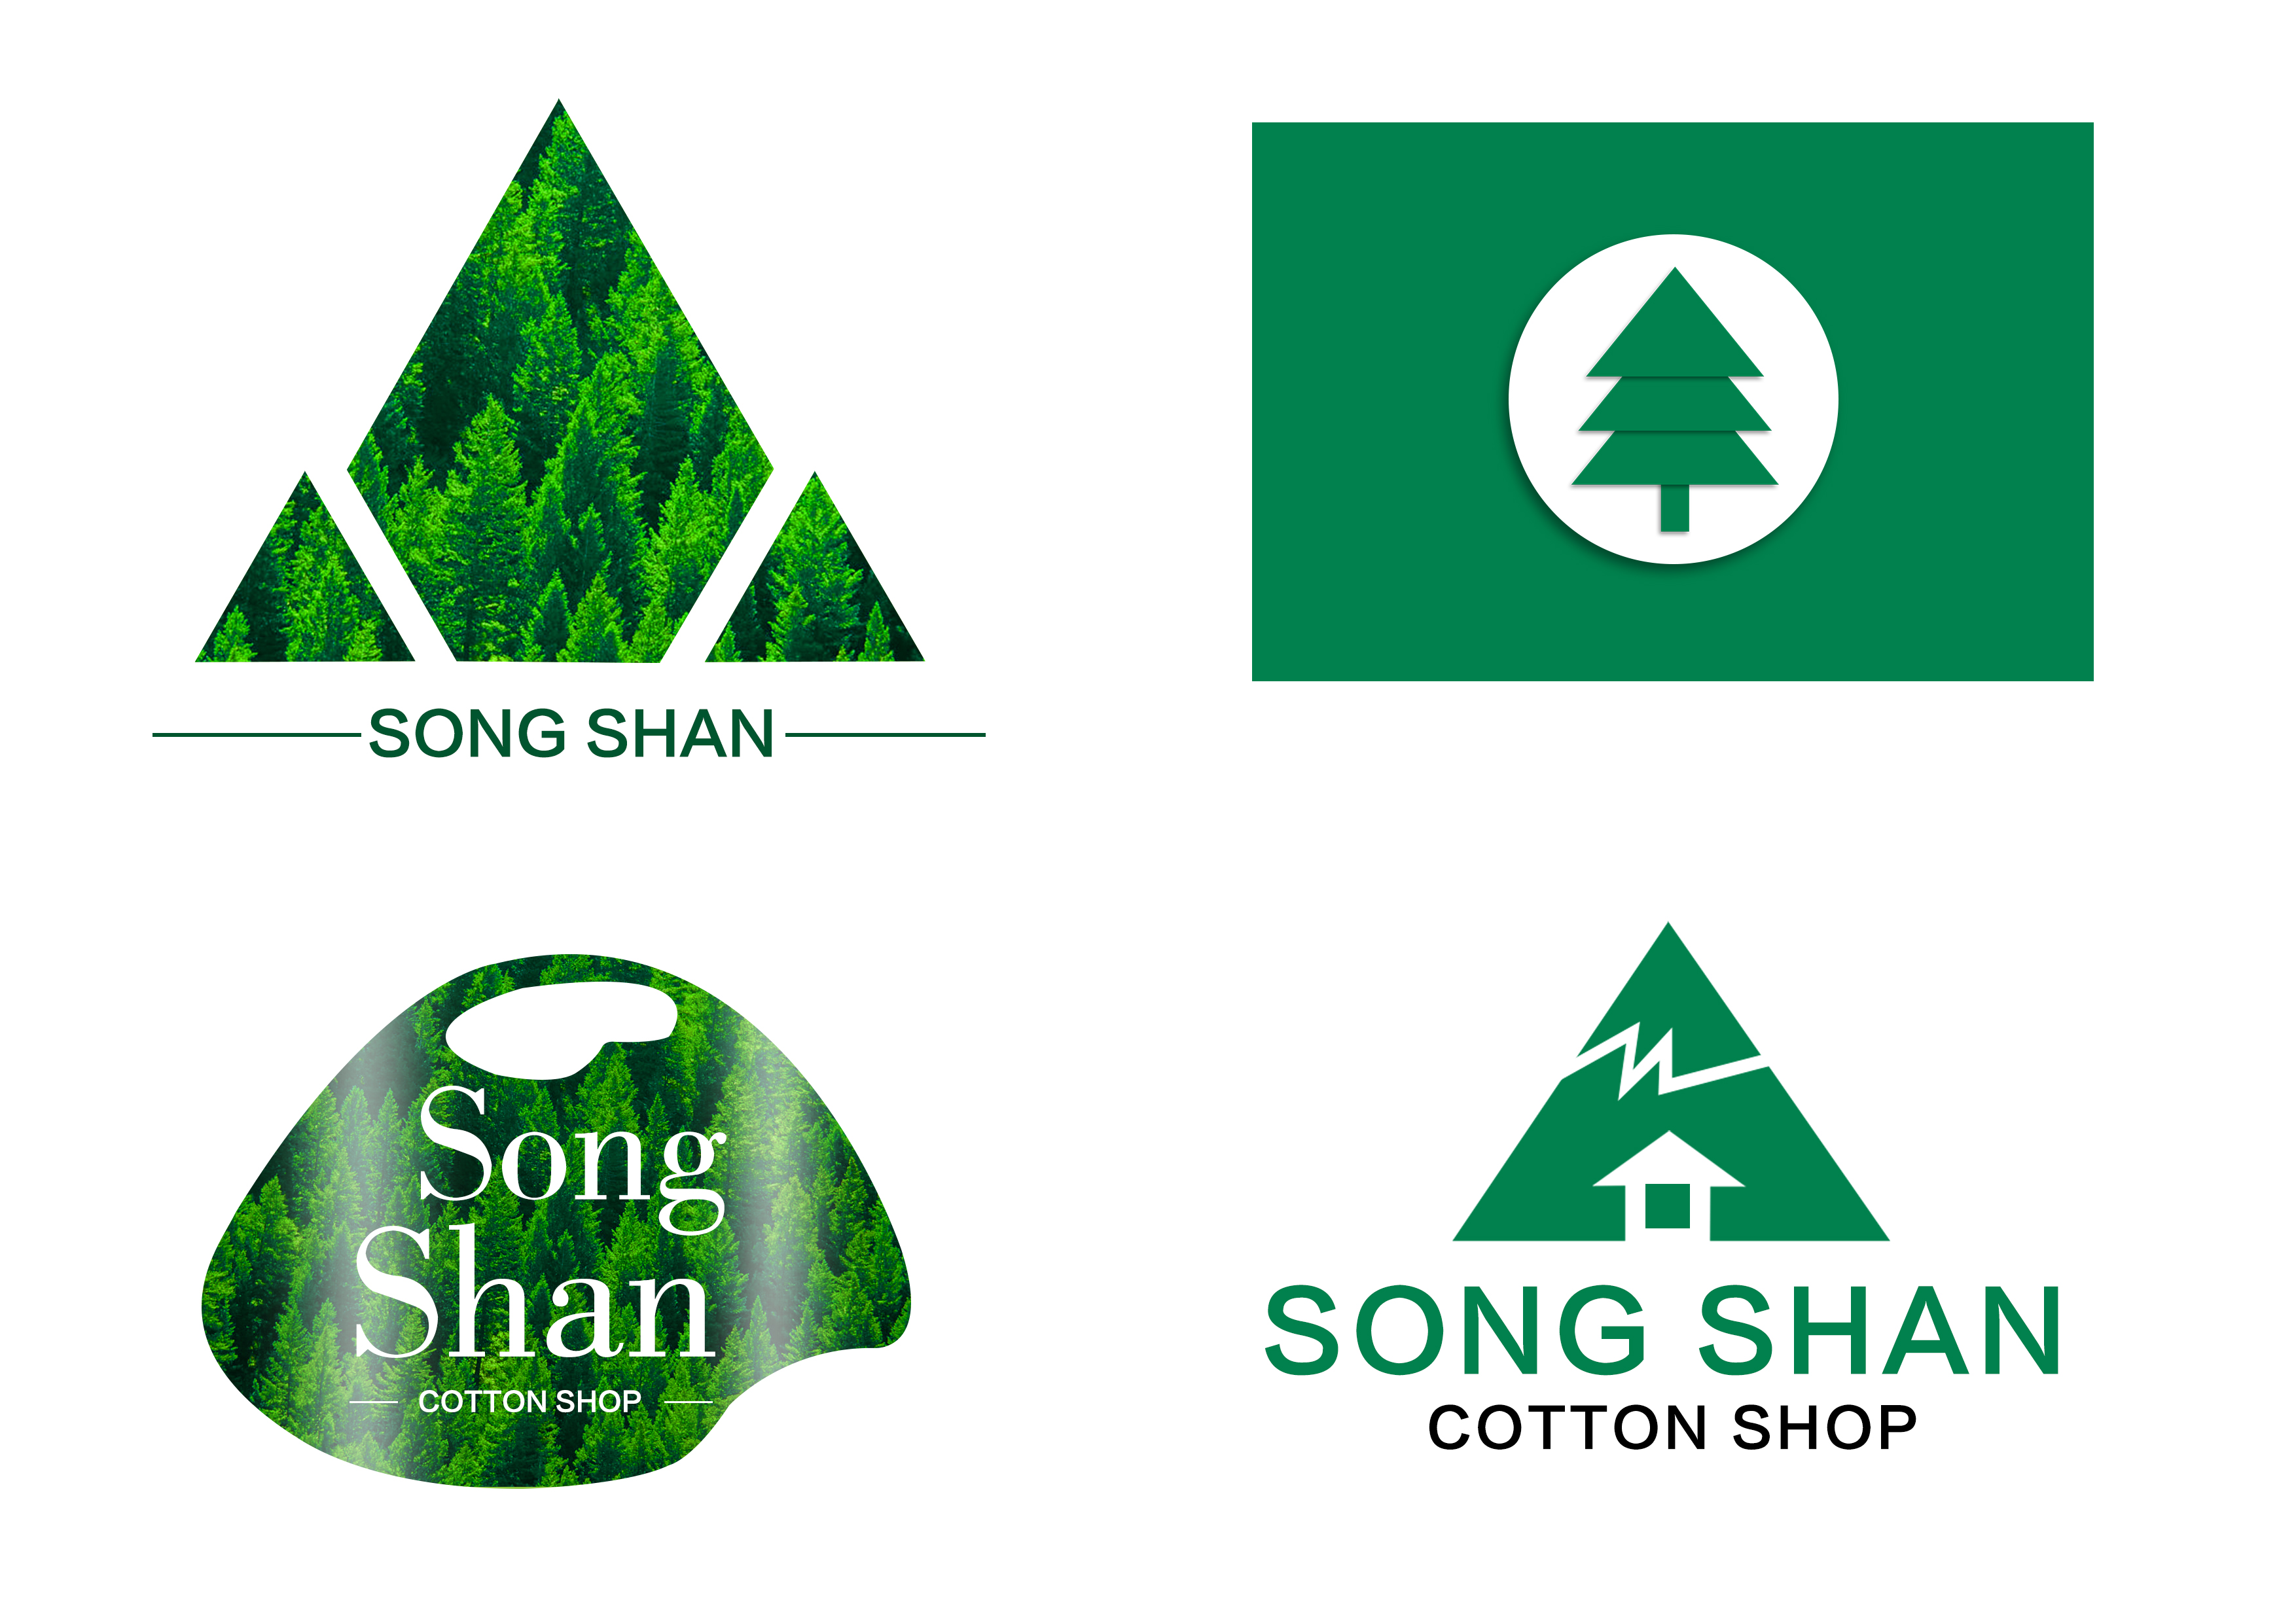 松树的logo图标图片